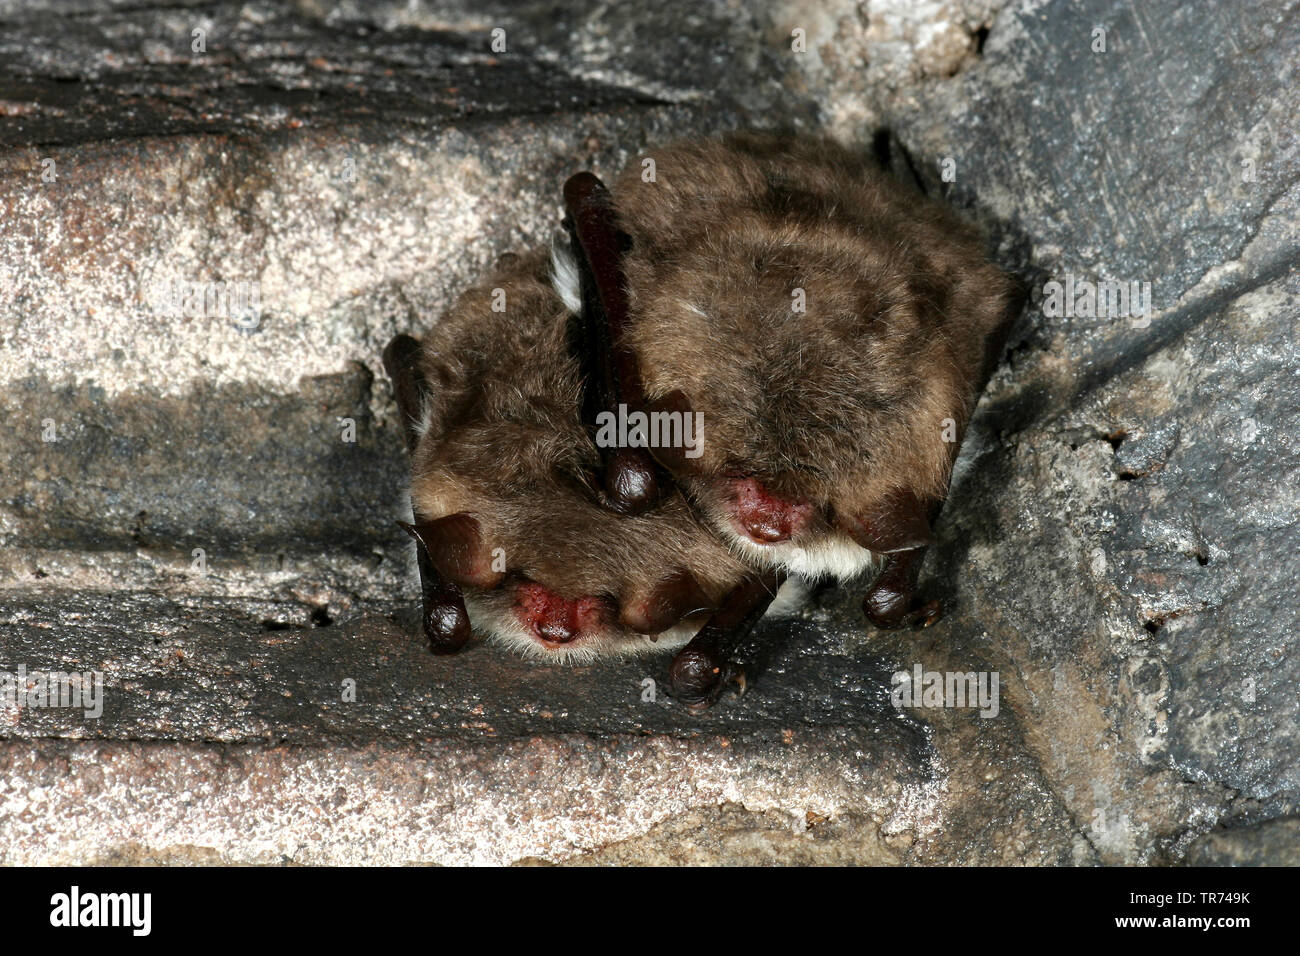 Natterer's bat (Myotis nattereri), two sleeping Natterer's bats, Netherlands Stock Photo